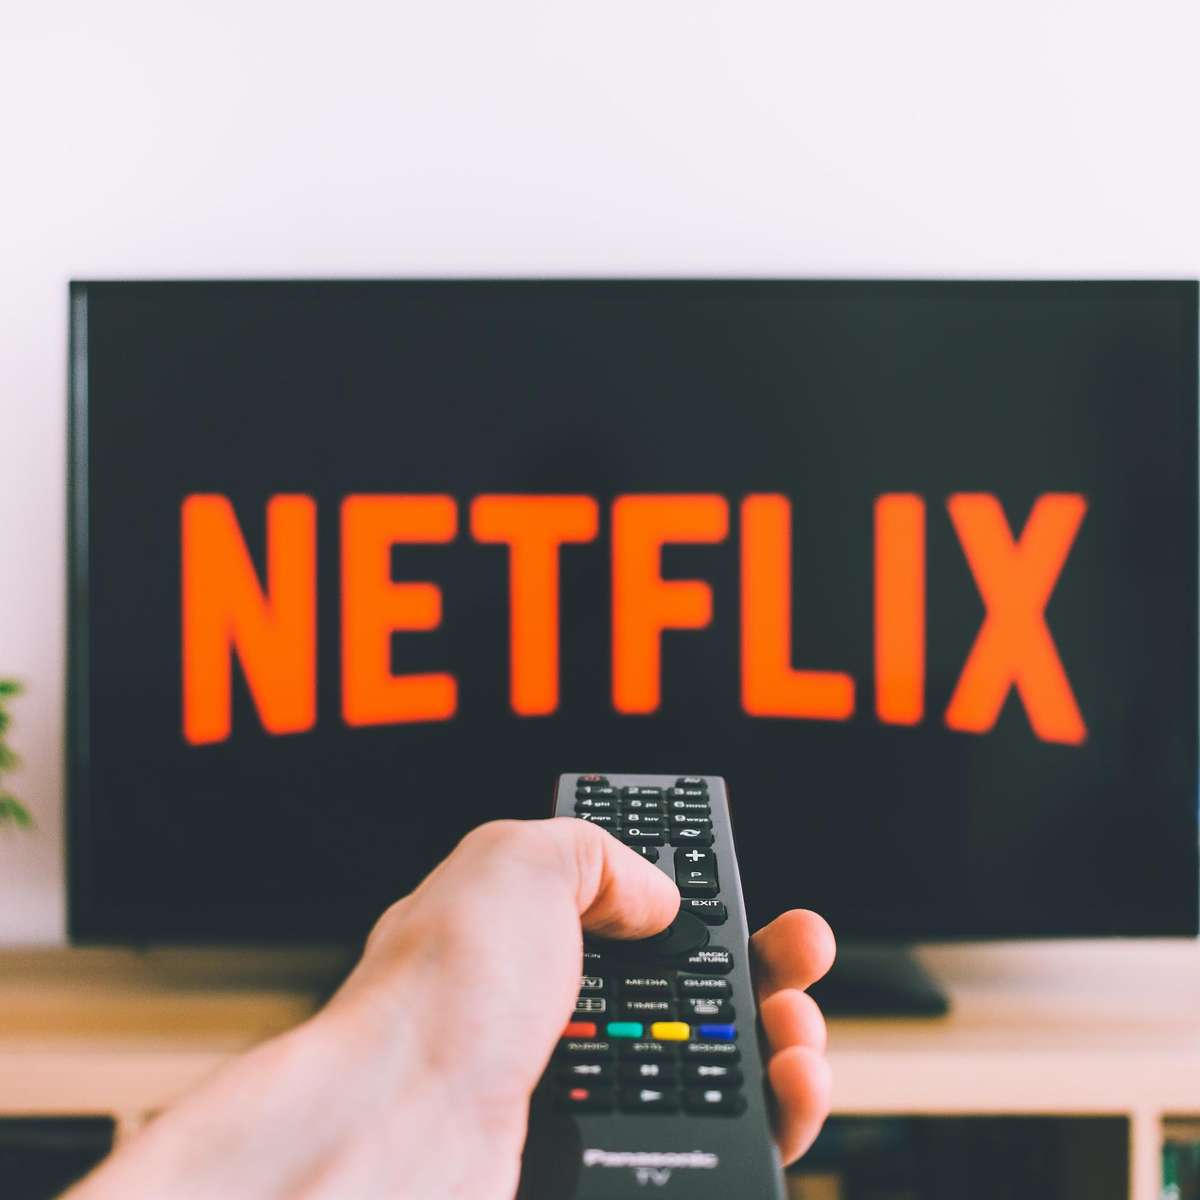 Assinaturas da Netflix saltam 102% nos EUA após taxa do ponto extra